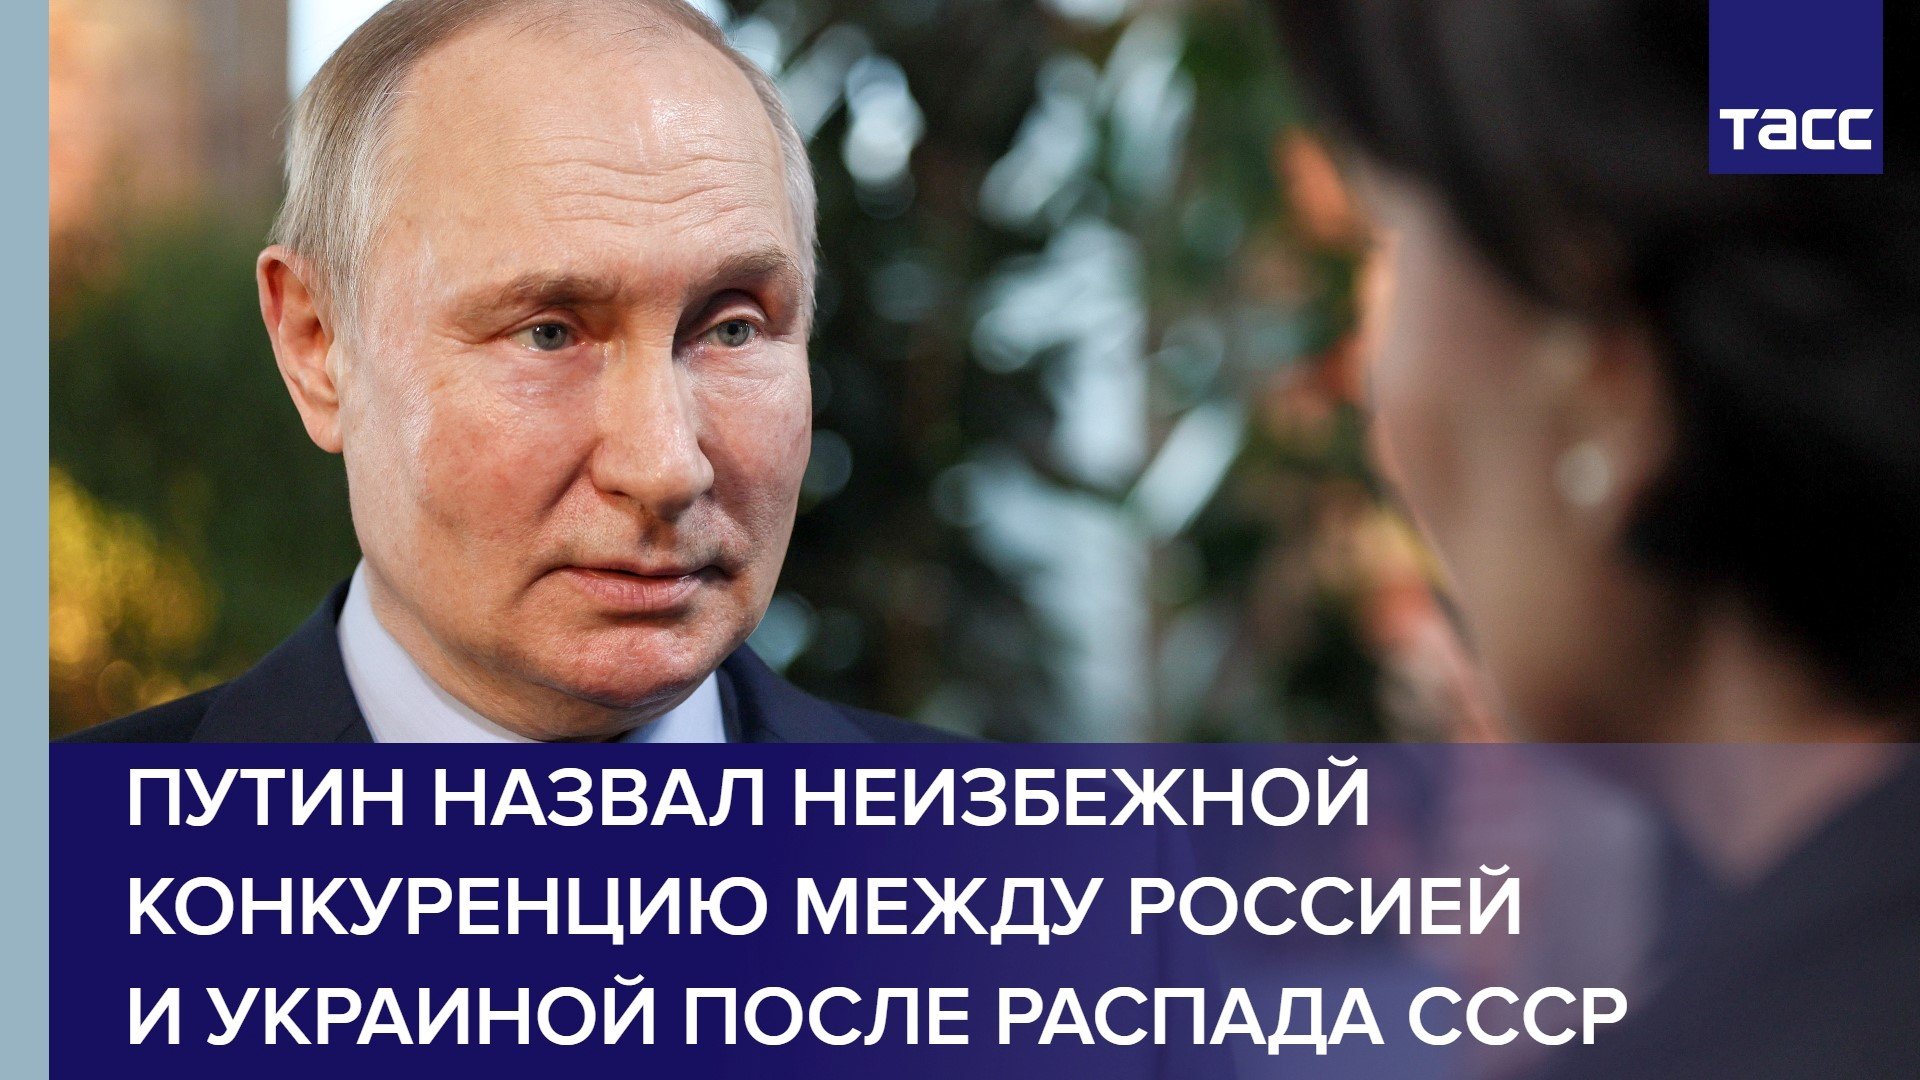 Путин назвал неизбежной конкуренцию между Россией и Украиной после распада СССР